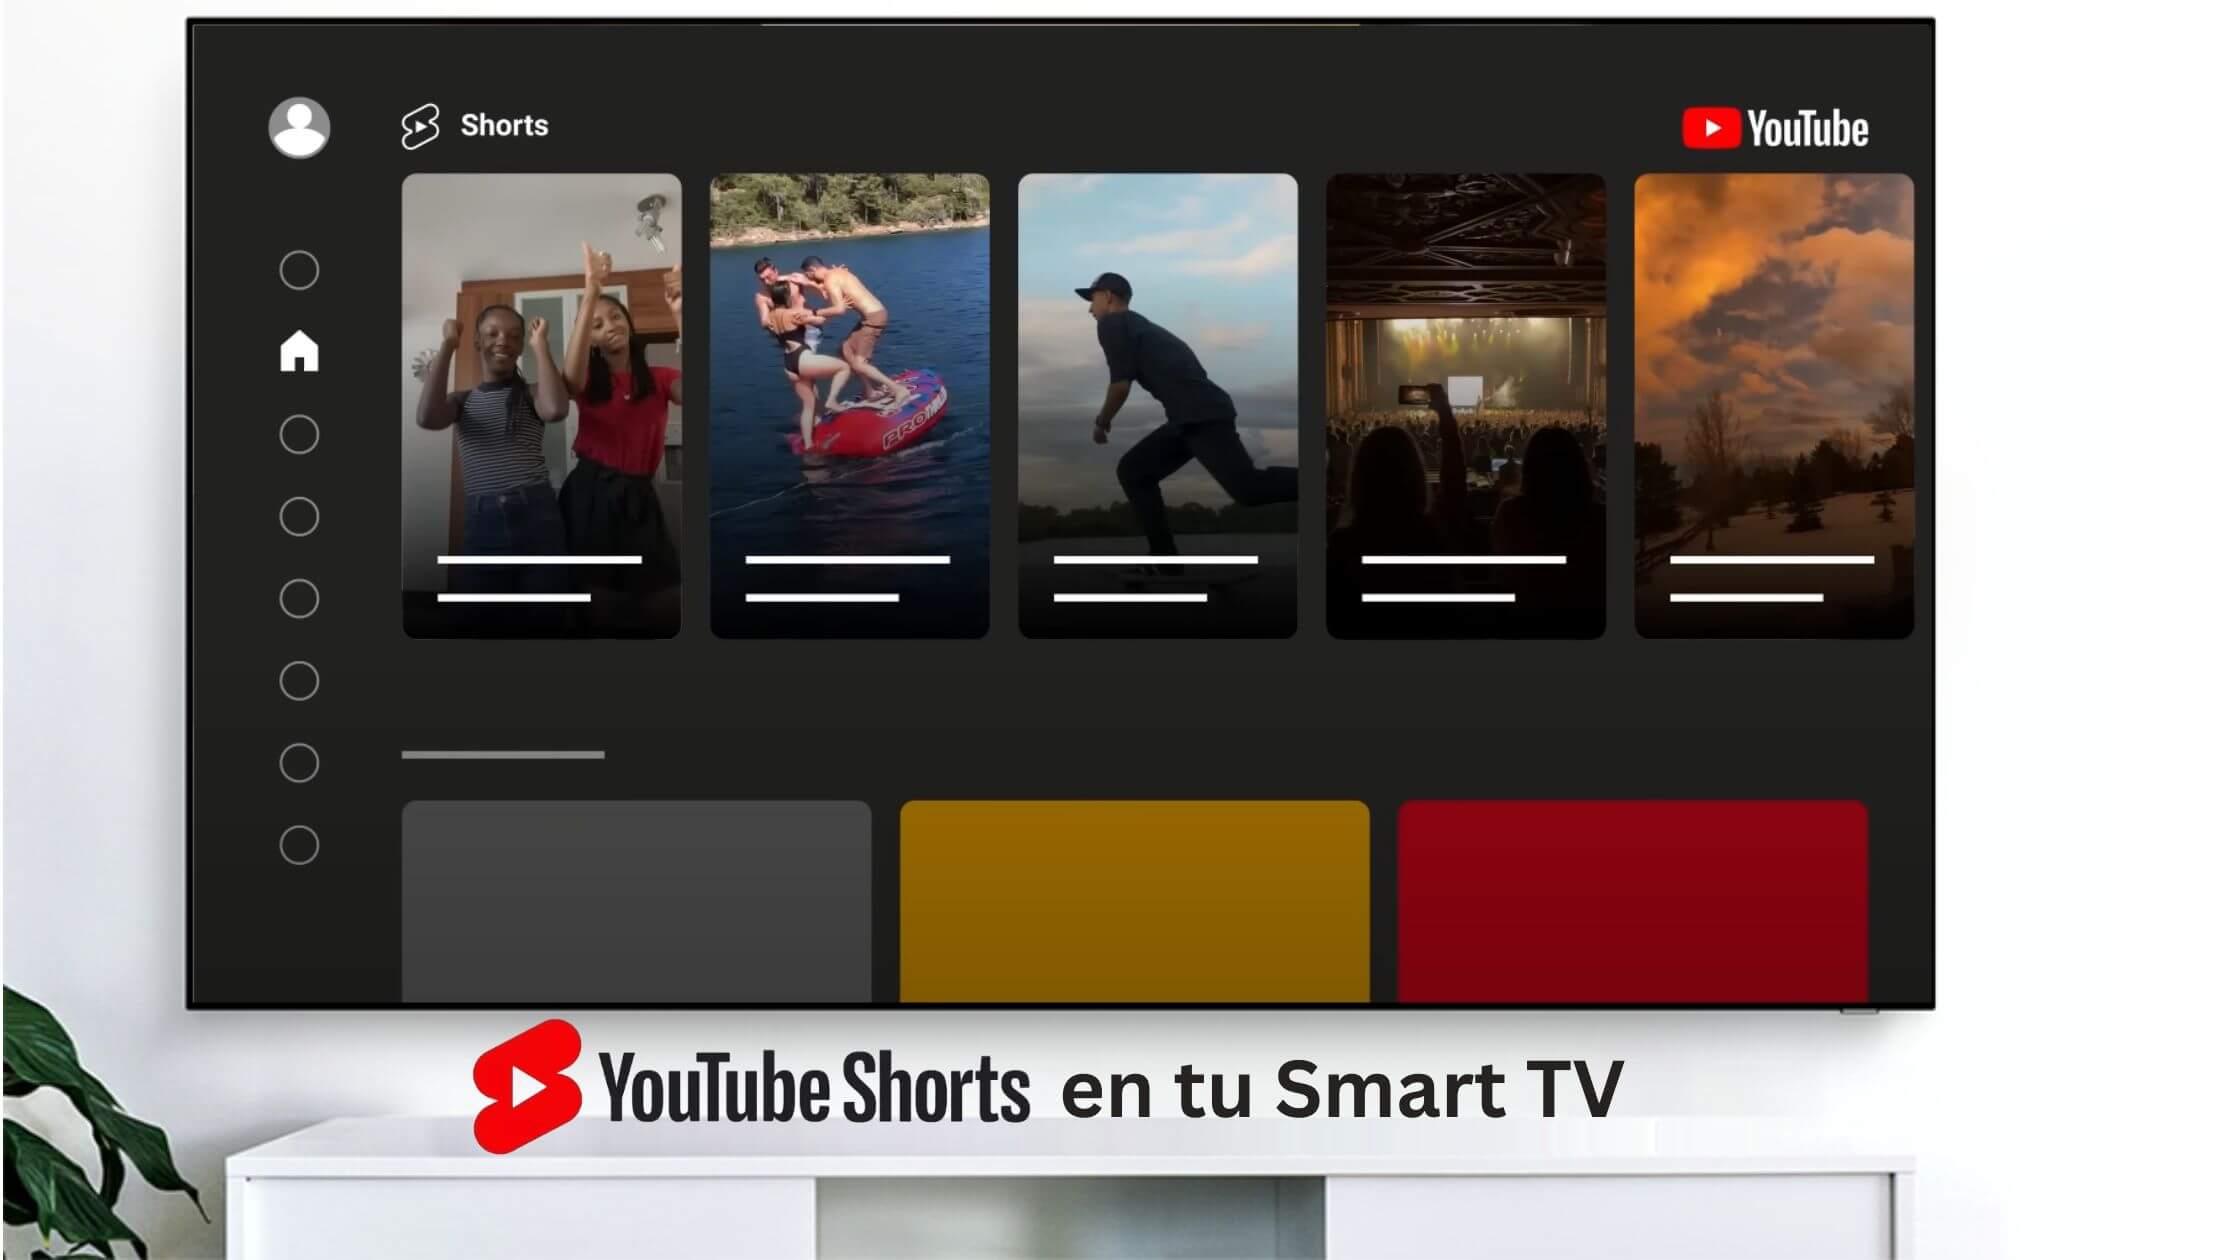 Ver los cortos de YouTube en tu Smart TV asi puedes verlos 1